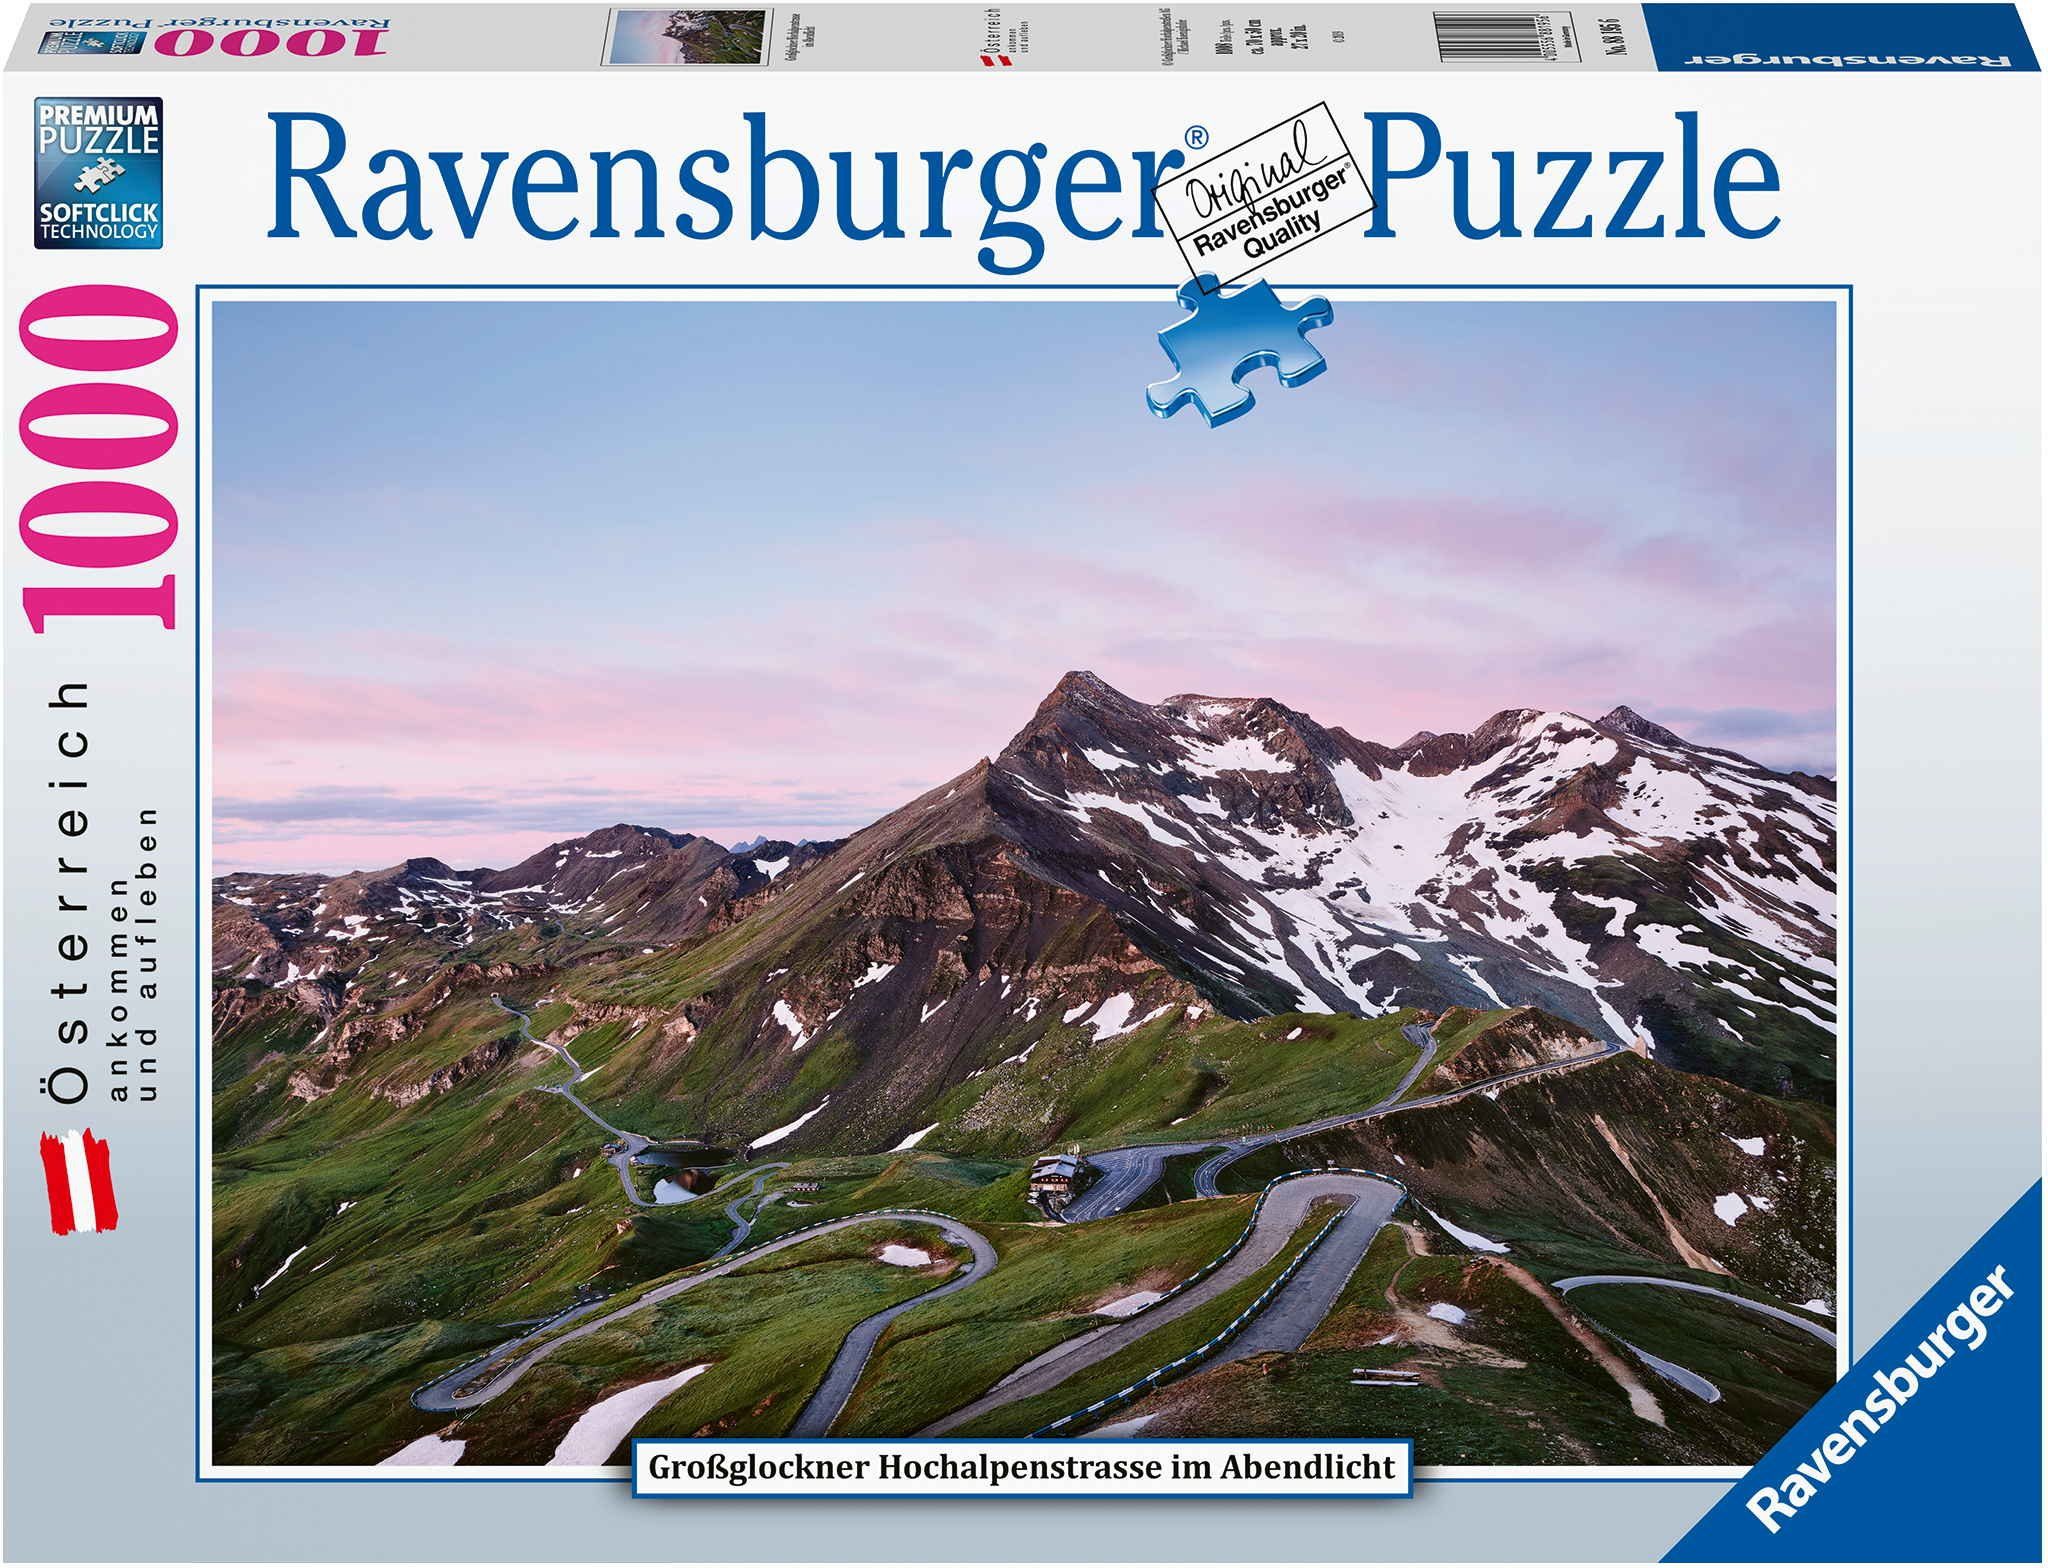 Ravensburger Puzzle 1000 Teile Puzzle Österreich Großglockner Hochalpenstraße 88195, 1000 Puzzleteile